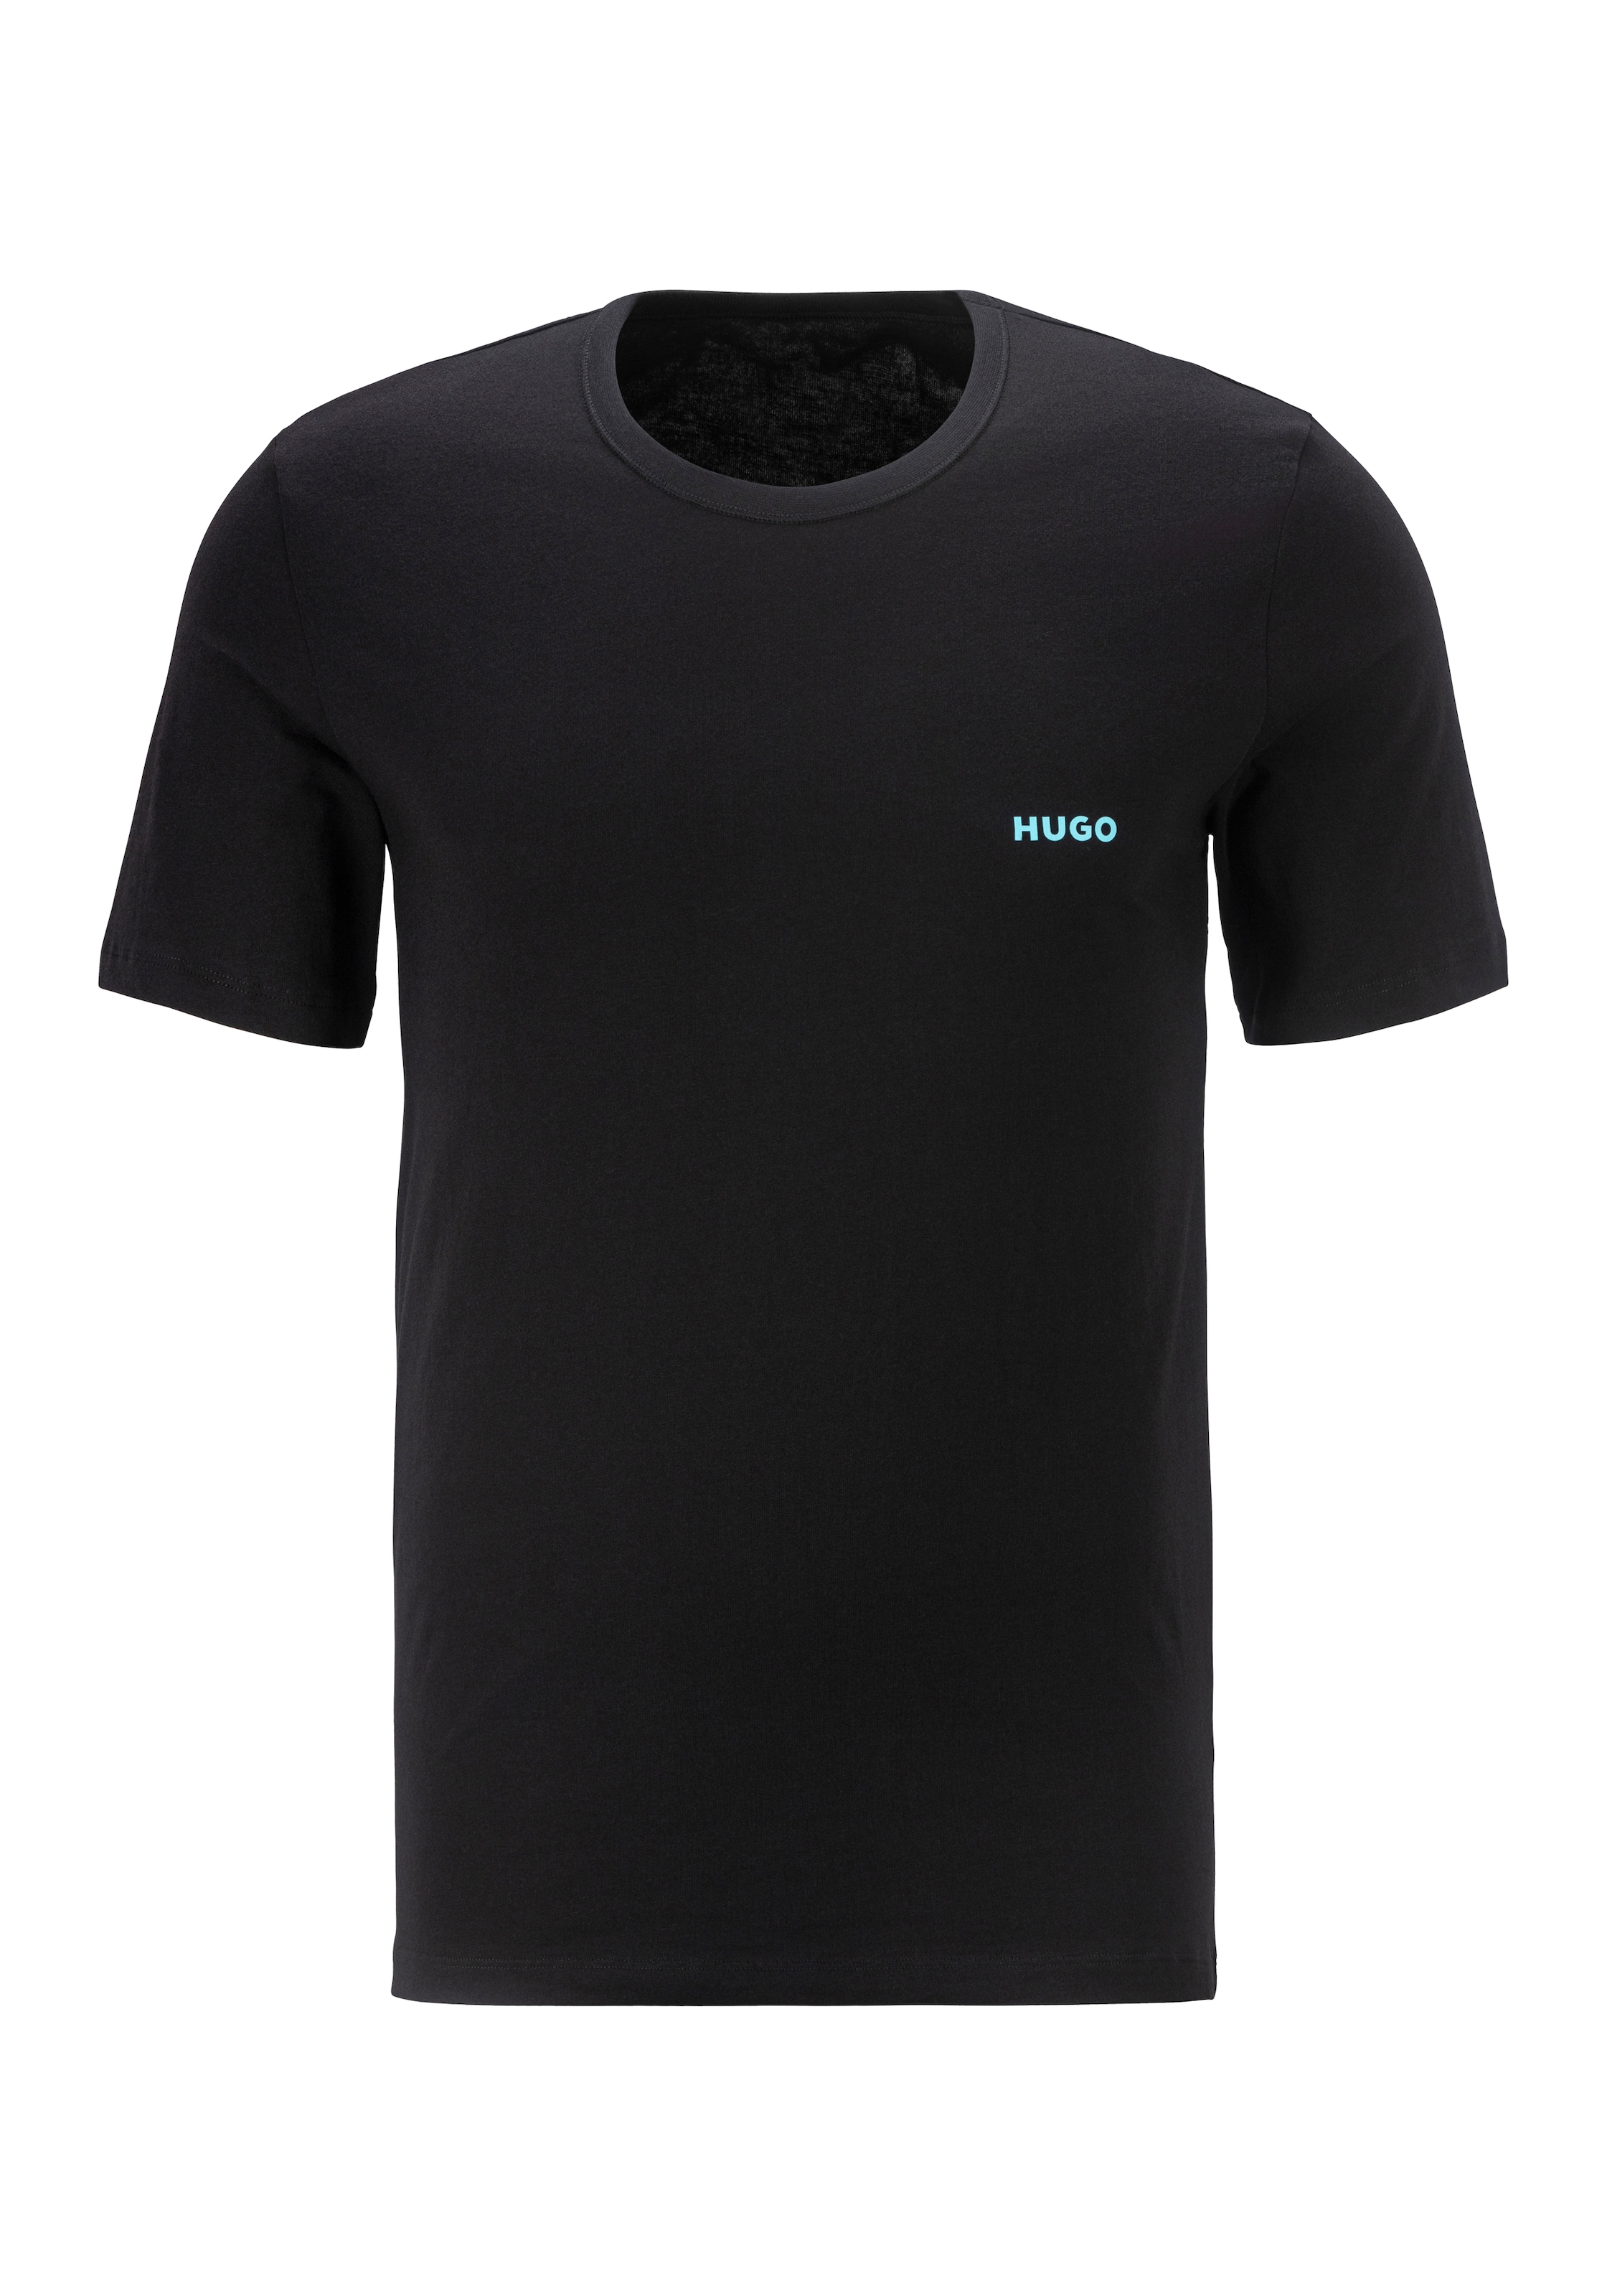 HUGO T-Shirt »T-SHIRT RN TRIPLET P 10217251 01«, mit HUGO Logo auf der Brust